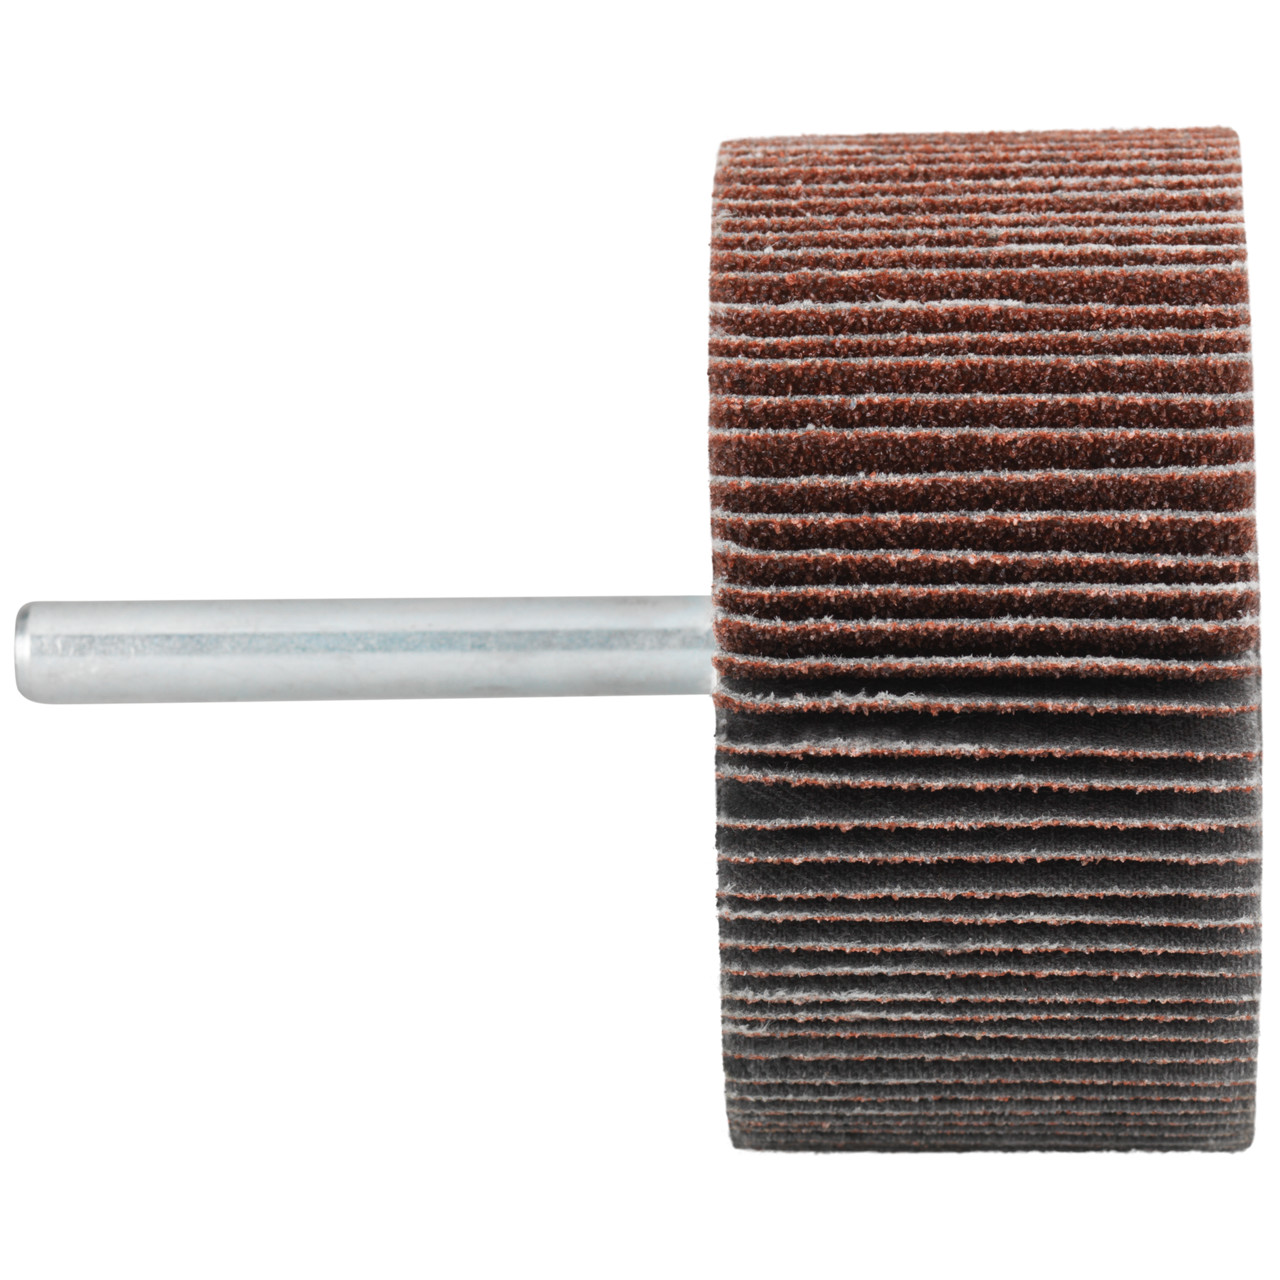 Tyrolit A-P01 C X Pennen DxD 60x30 Voor staal, roestvast staal en non-ferrometalen, P40, vorm: 52LA, Art. 817011